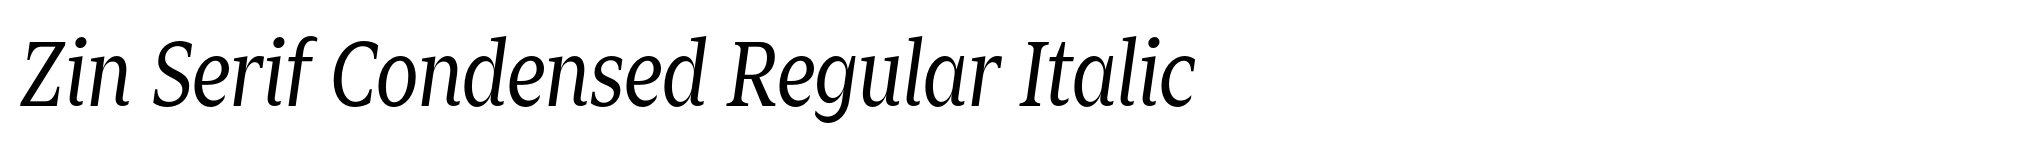 Zin Serif Condensed Regular Italic image